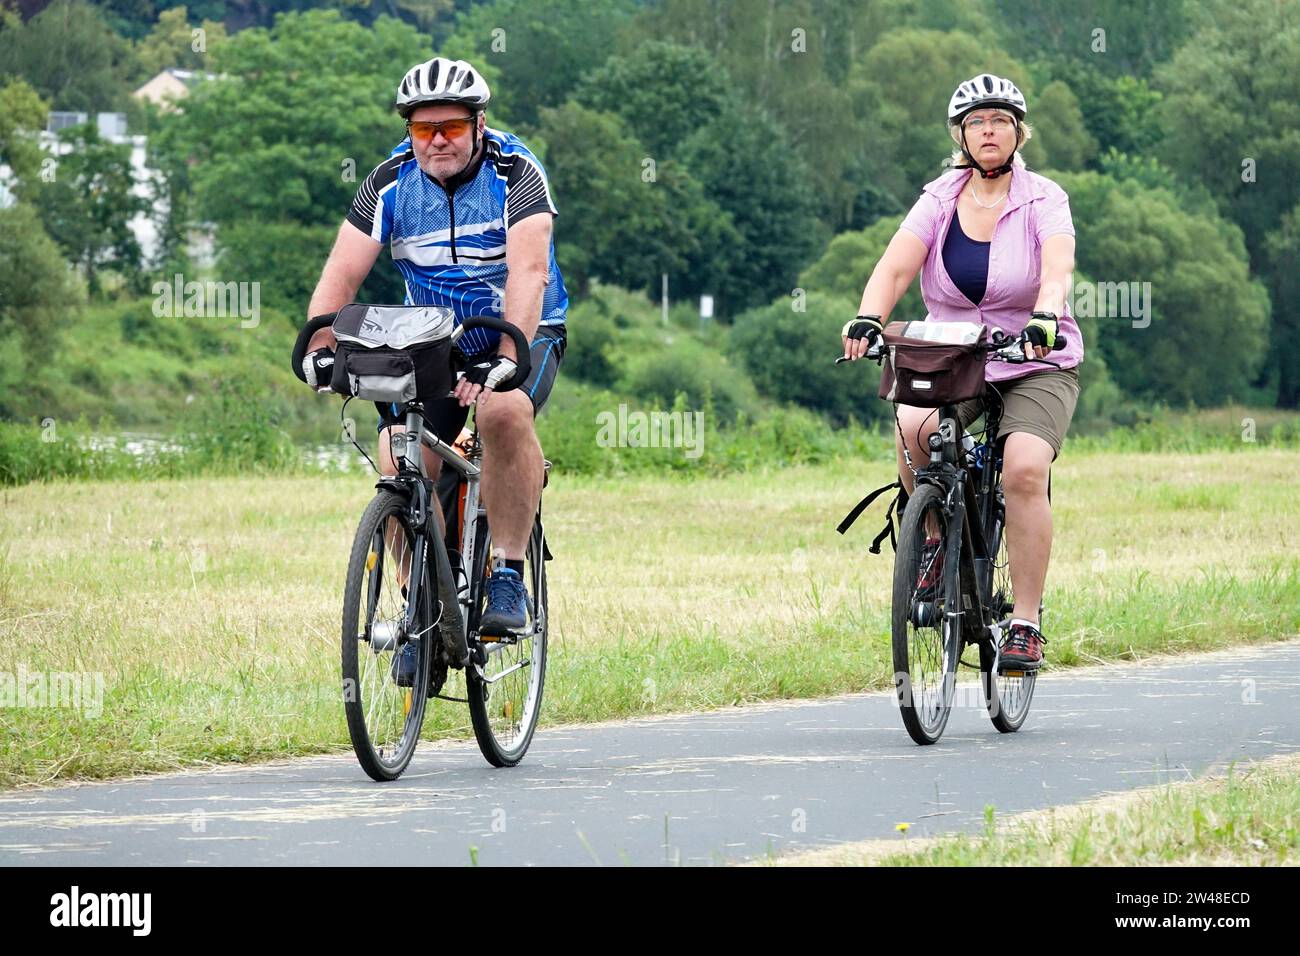 Una coppia, un uomo e una donna, stanno andando in bicicletta su una pista ciclabile in un paesaggio con un prato falciato Foto Stock